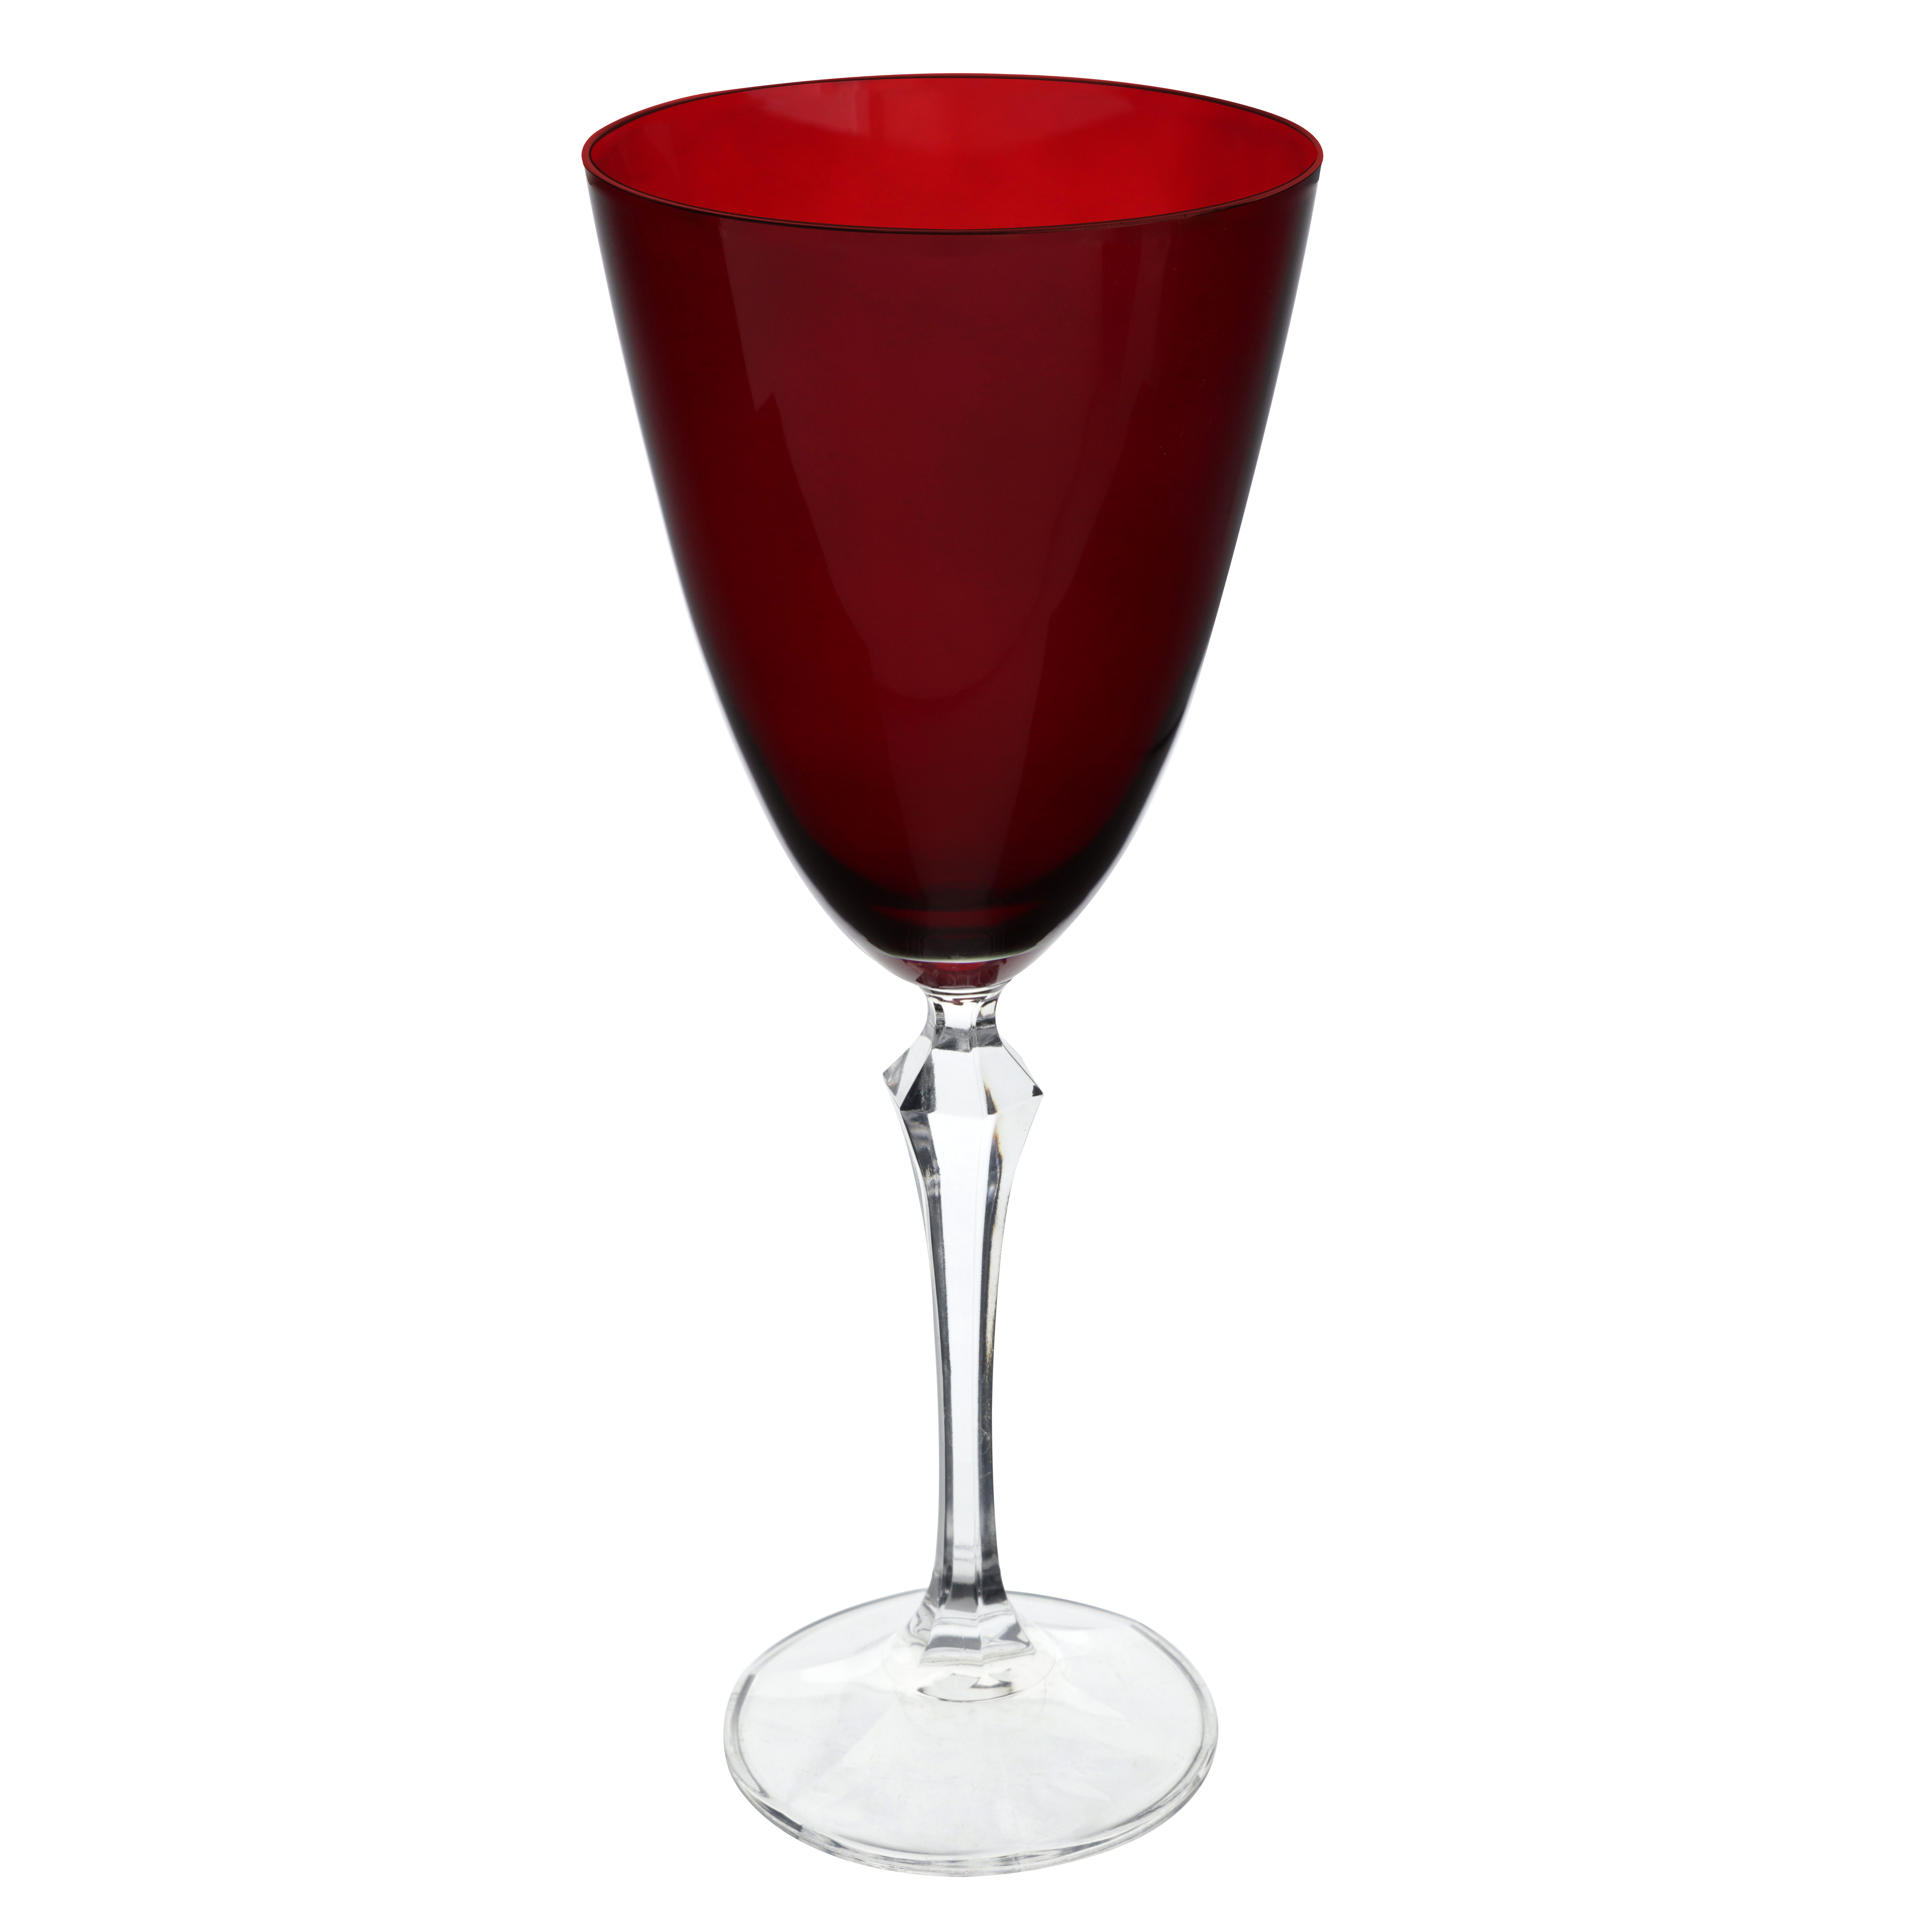 Jogo de 6 tacas para agua Elizabeth em cristal ecologico 350ml A23cm cor vermelha